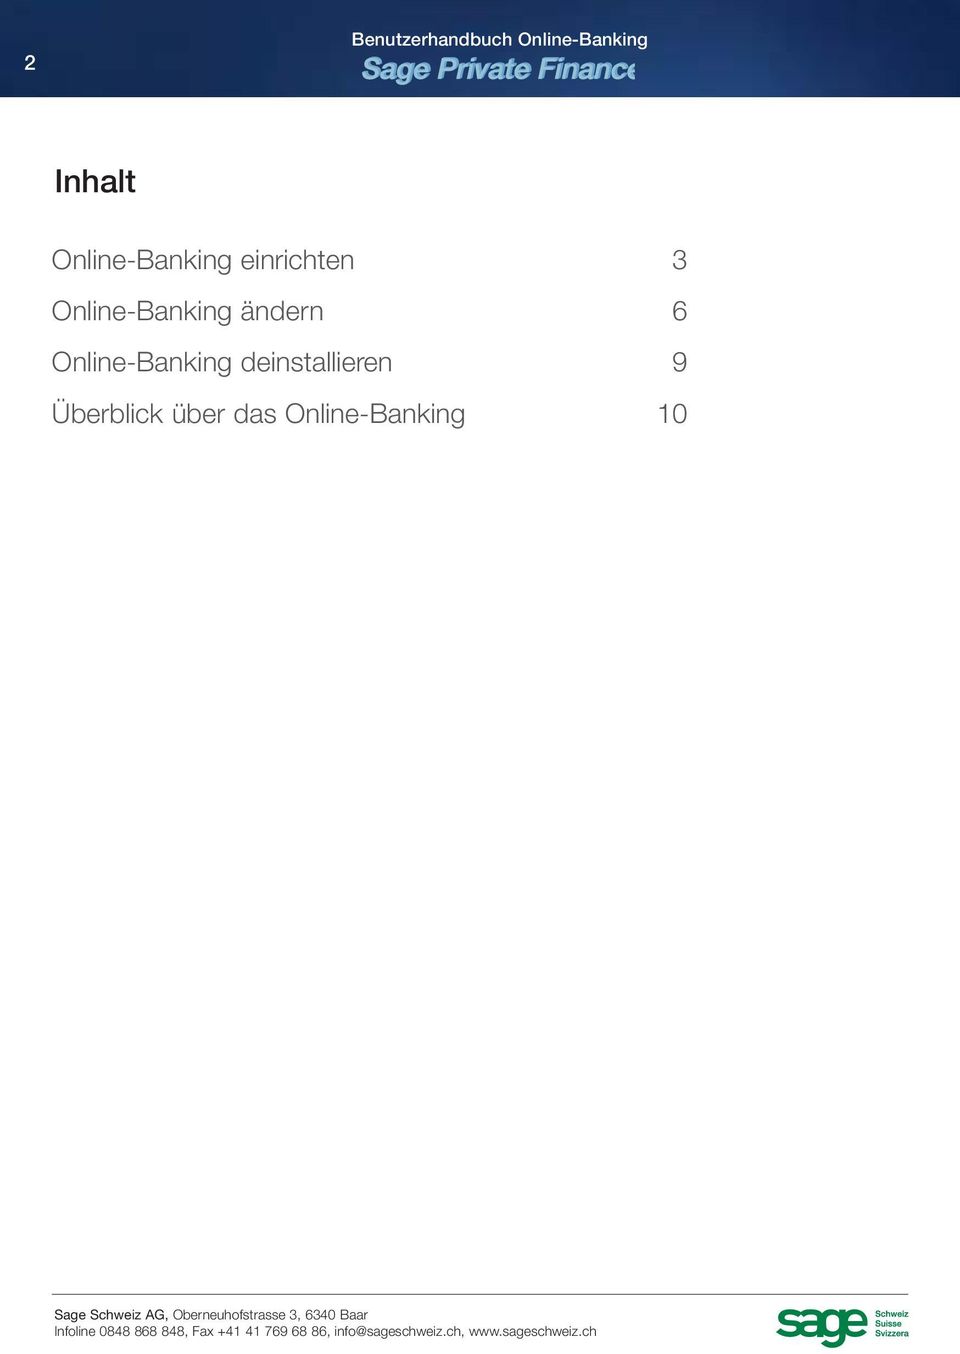 Online-Banking ändern 6 Online-Banking